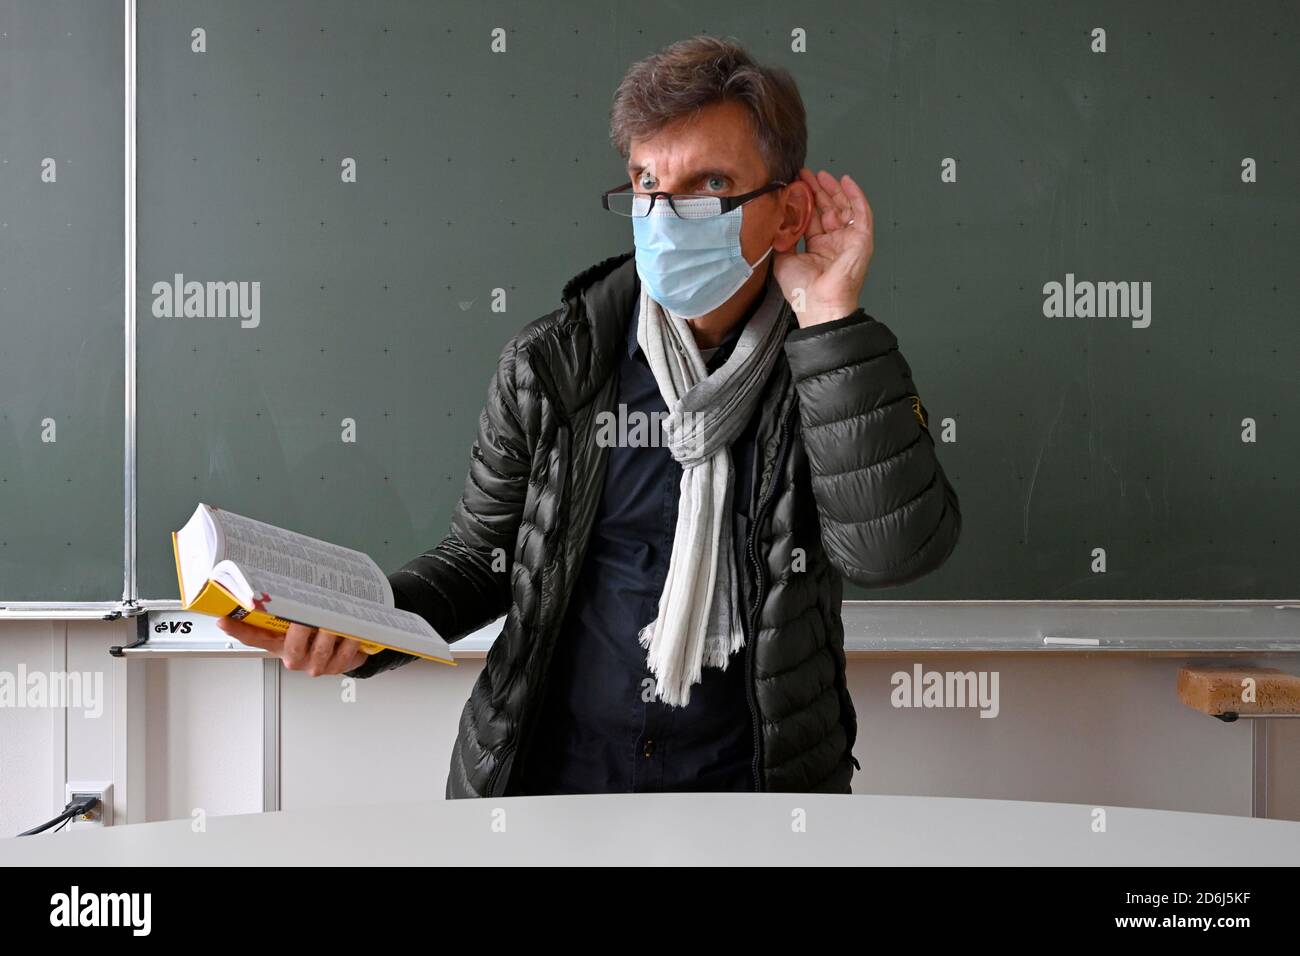 Professeur avec une veste d'hiver épaisse, foulard et masque facial en classe, main sur l'oreille, problèmes de communication, crise corona, Stuttgart, Baden-Wuerttemberg Banque D'Images